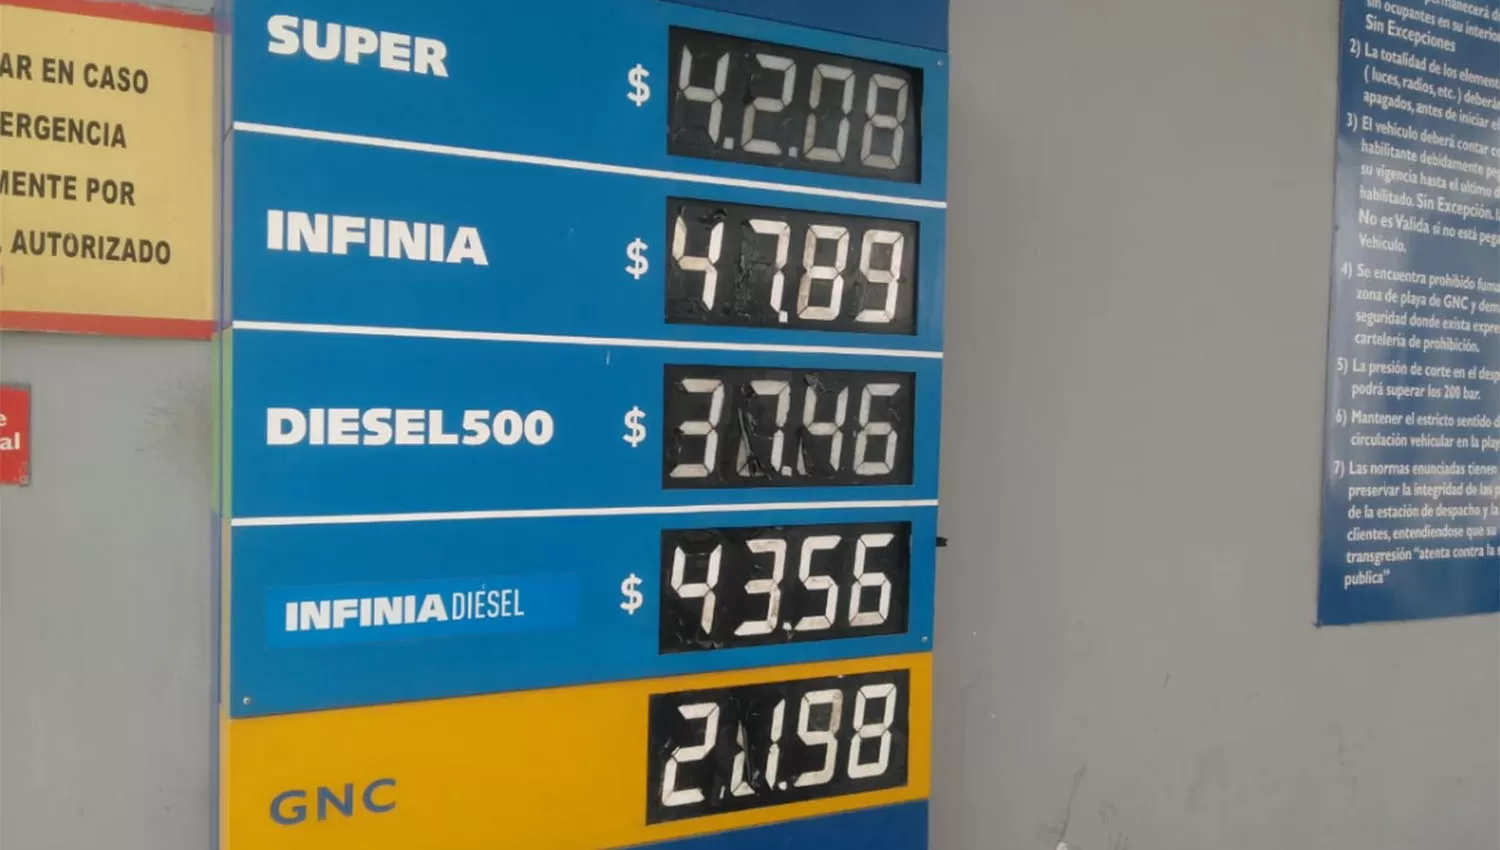 La nafta súper de YPF subió hoy un 1,74% en Tucumán